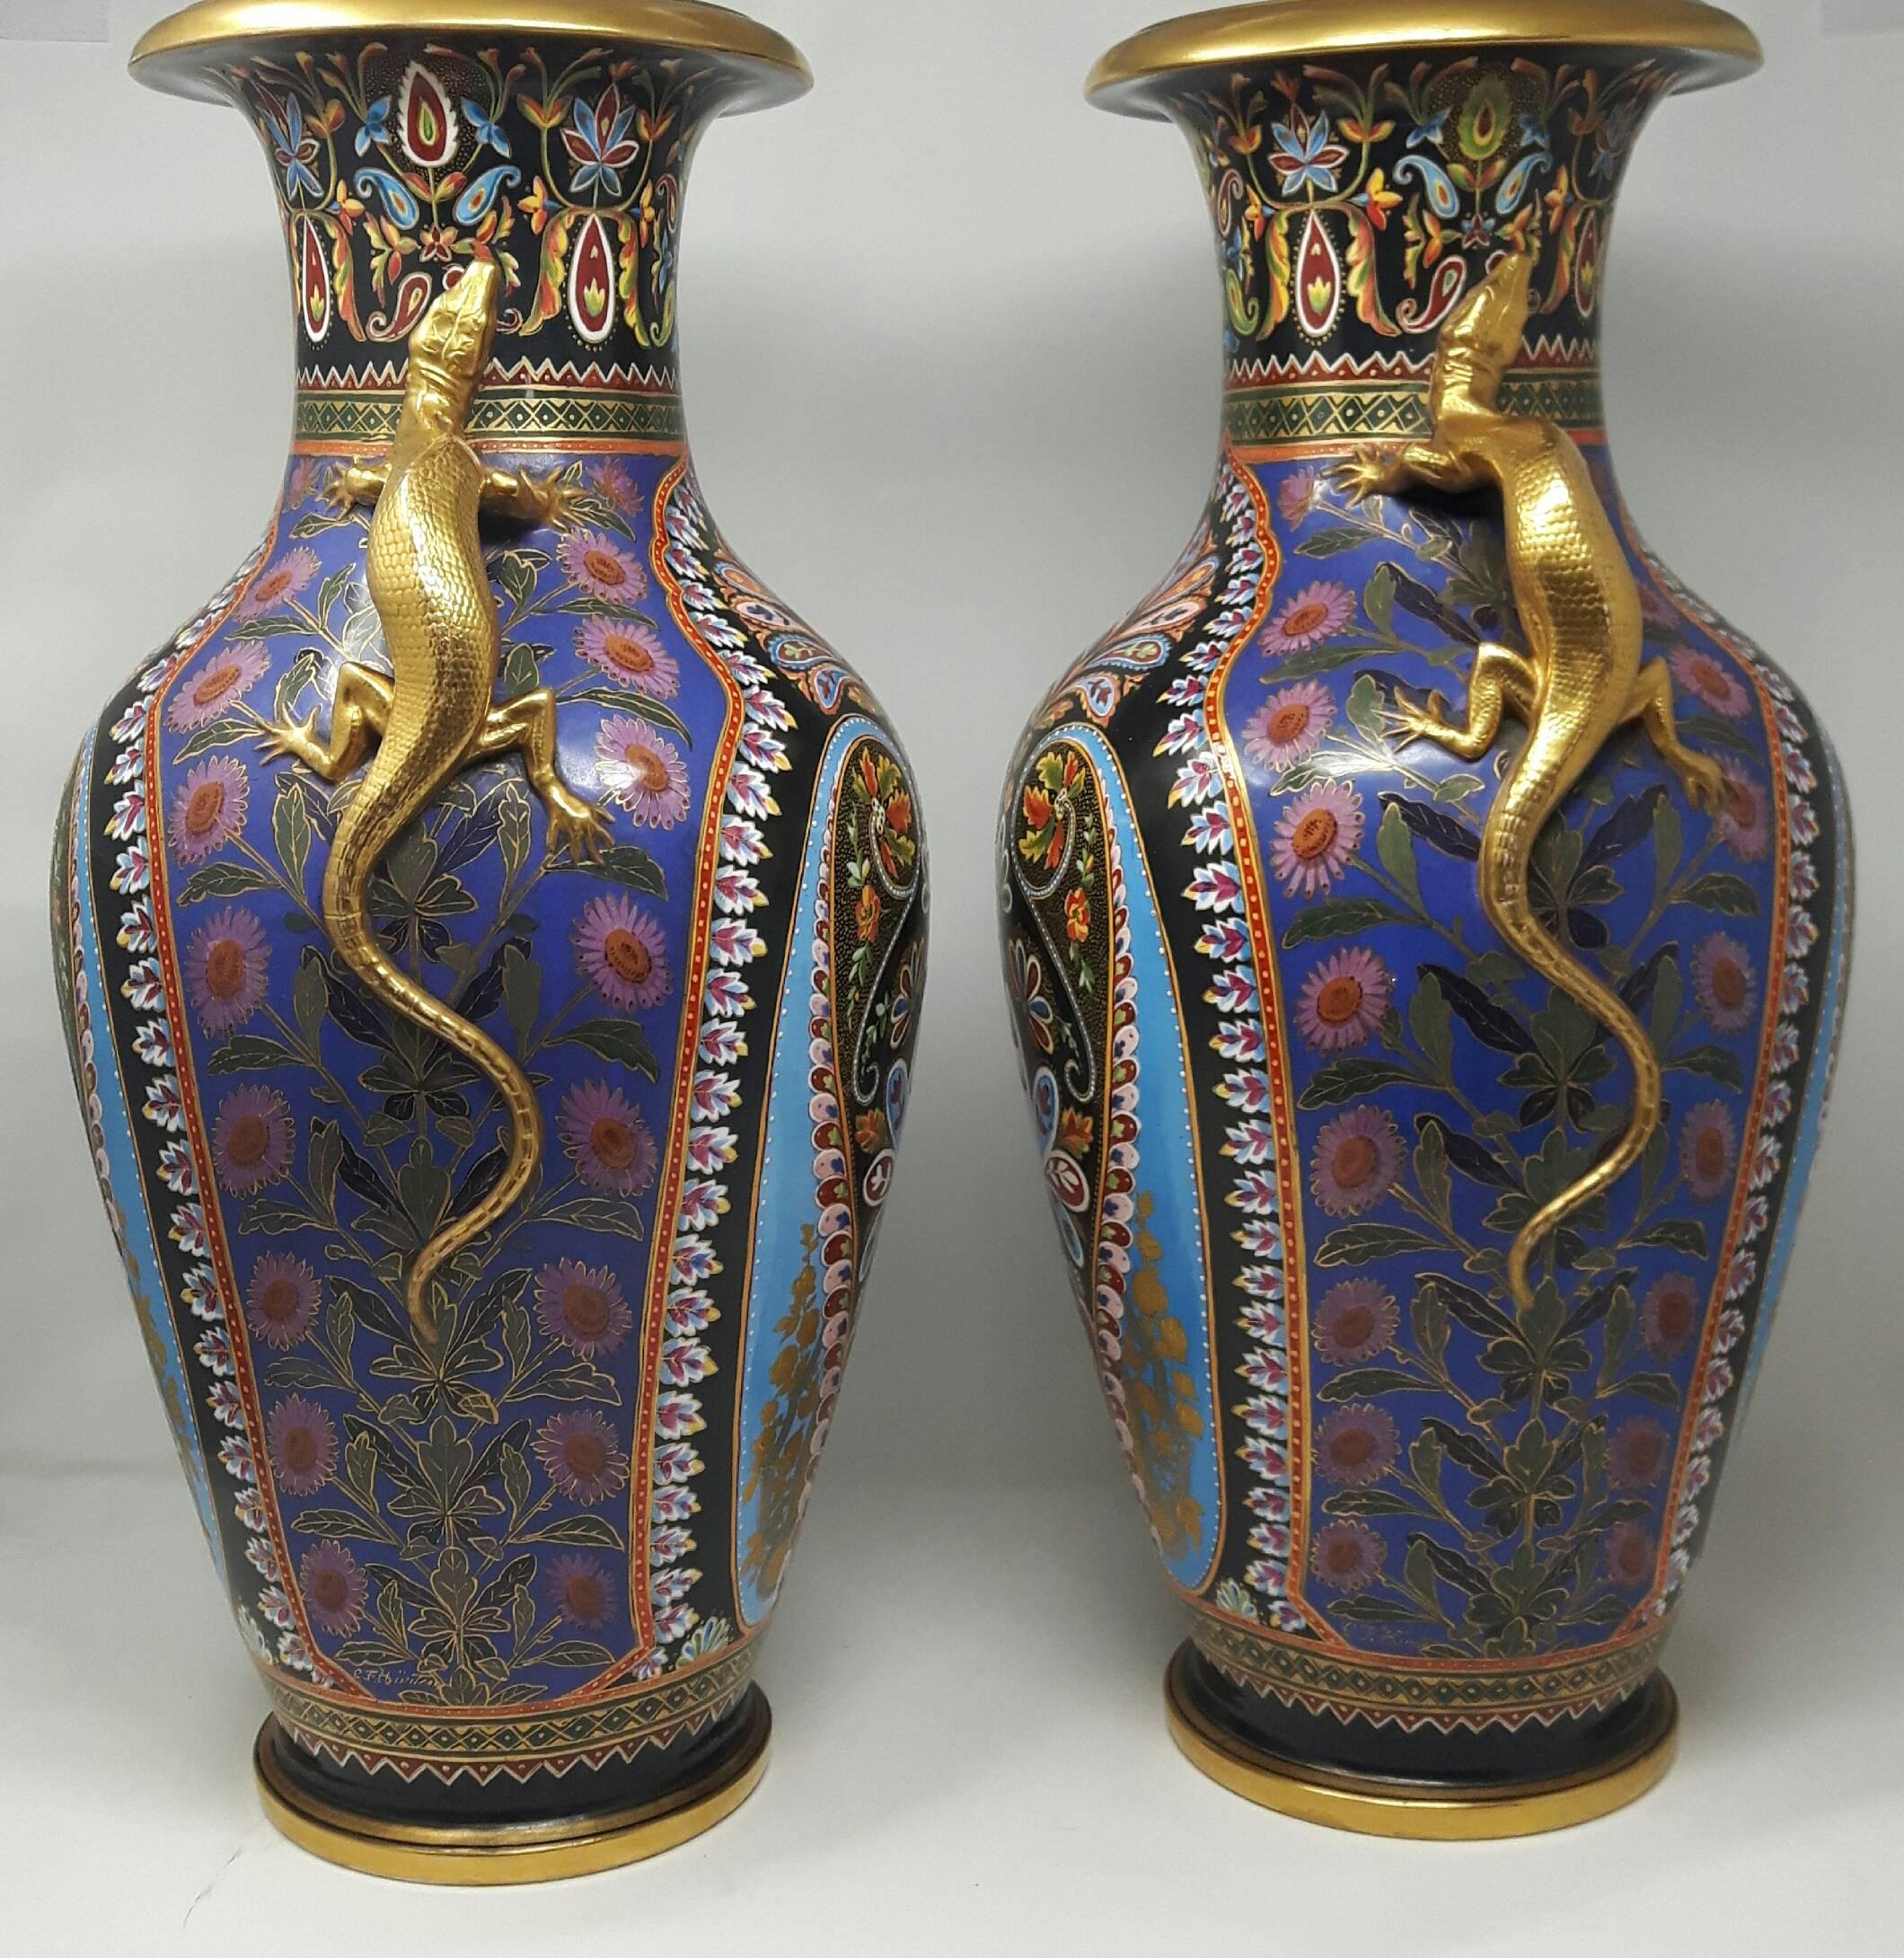 English Magnificent Pair of Copeland Vases